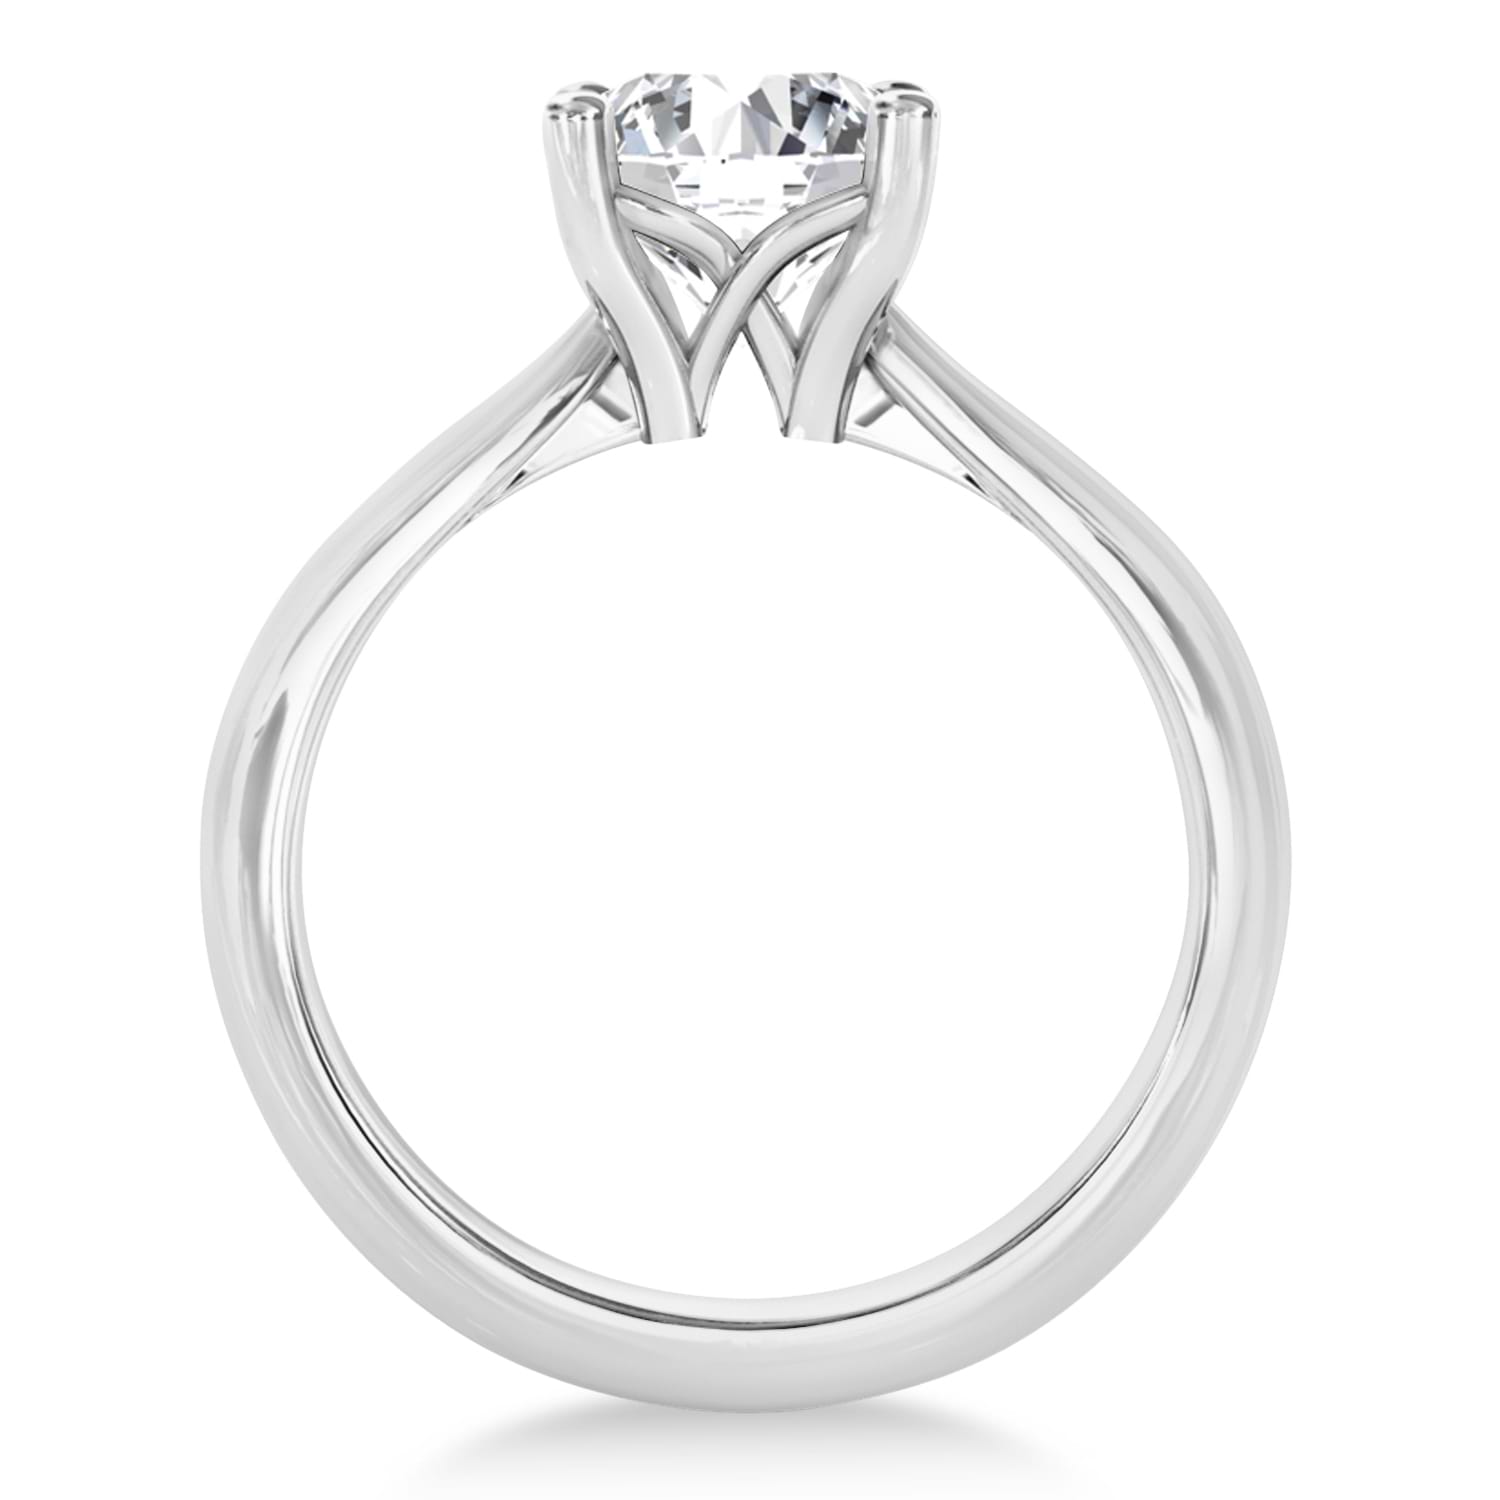 Diamond Fancy Engagement Ring 14k White Gold